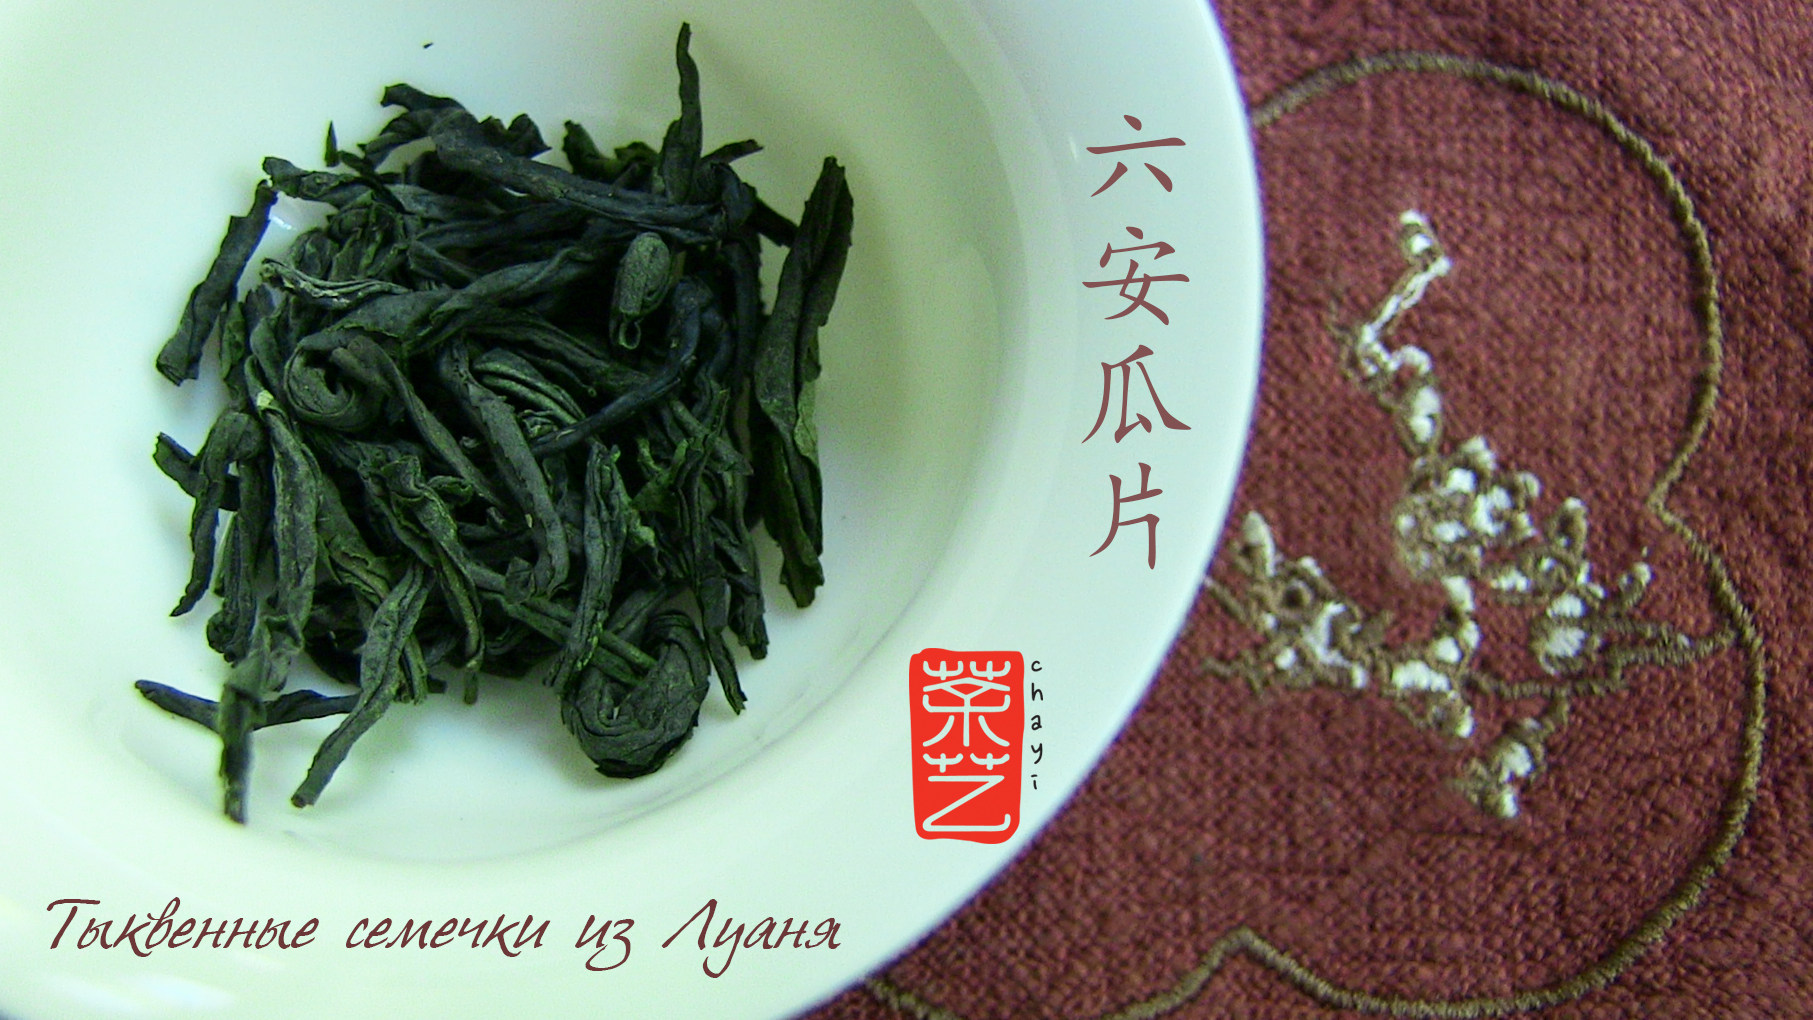 Гарбузове насіння з Луаня 六安瓜片 Лу Ань Гуа Пянь